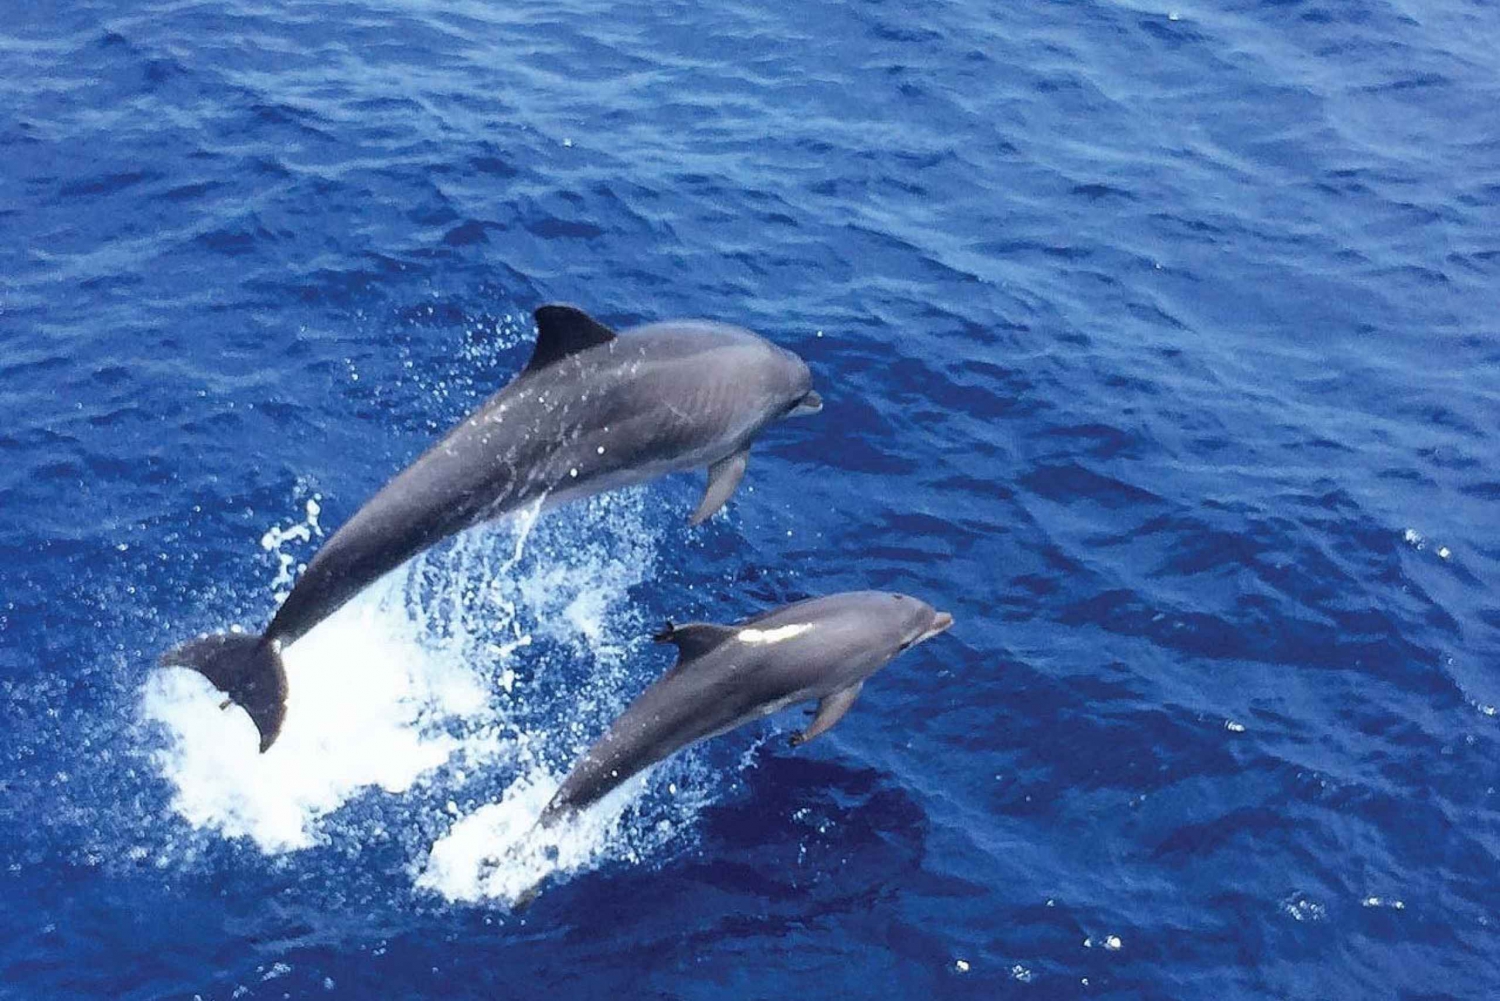 Från Palma: 3-timmars båttur med delfinskådning på morgonen